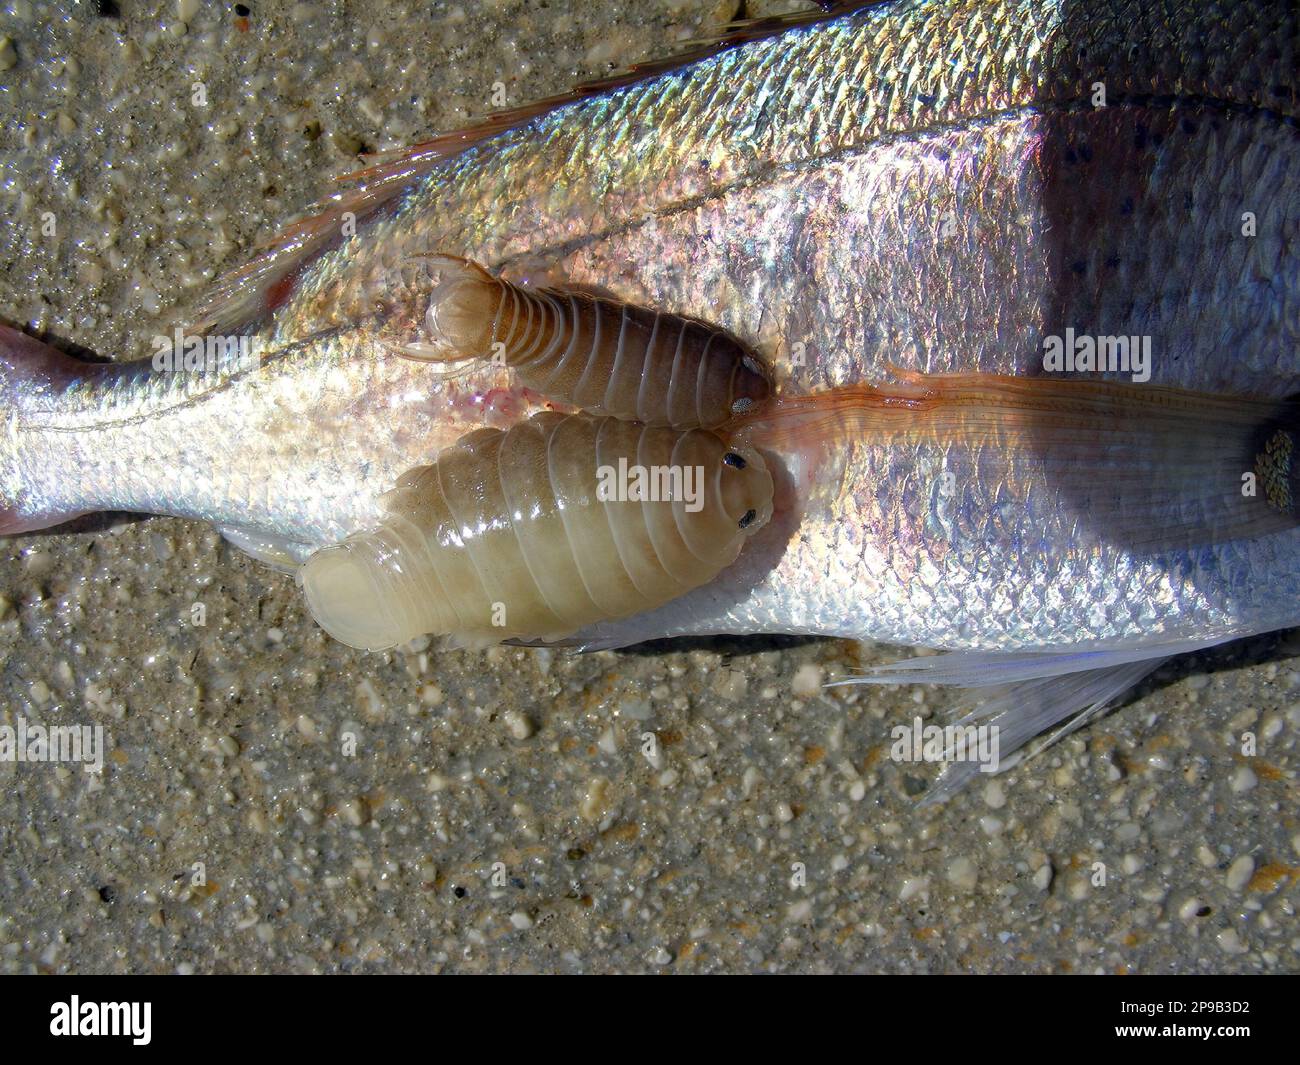 Die gemeine pandora (Pagellus erythrinus), ein Fisch der Familie der Seebrassen, Sparidae mit Parasiten Anilocra physodes, die seitlich am Körper befestigt sind. Stockfoto